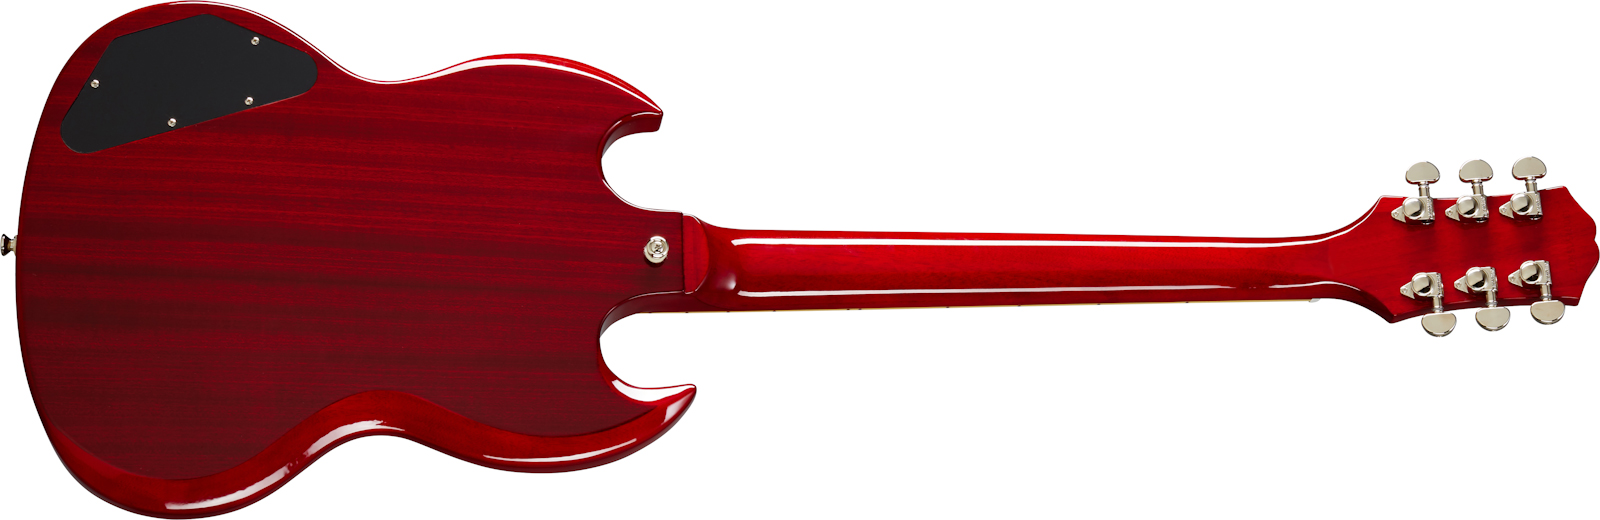 Epiphone Sg Standard 2h Ht Lau - Cherry - Guitarra eléctrica de doble corte. - Variation 1